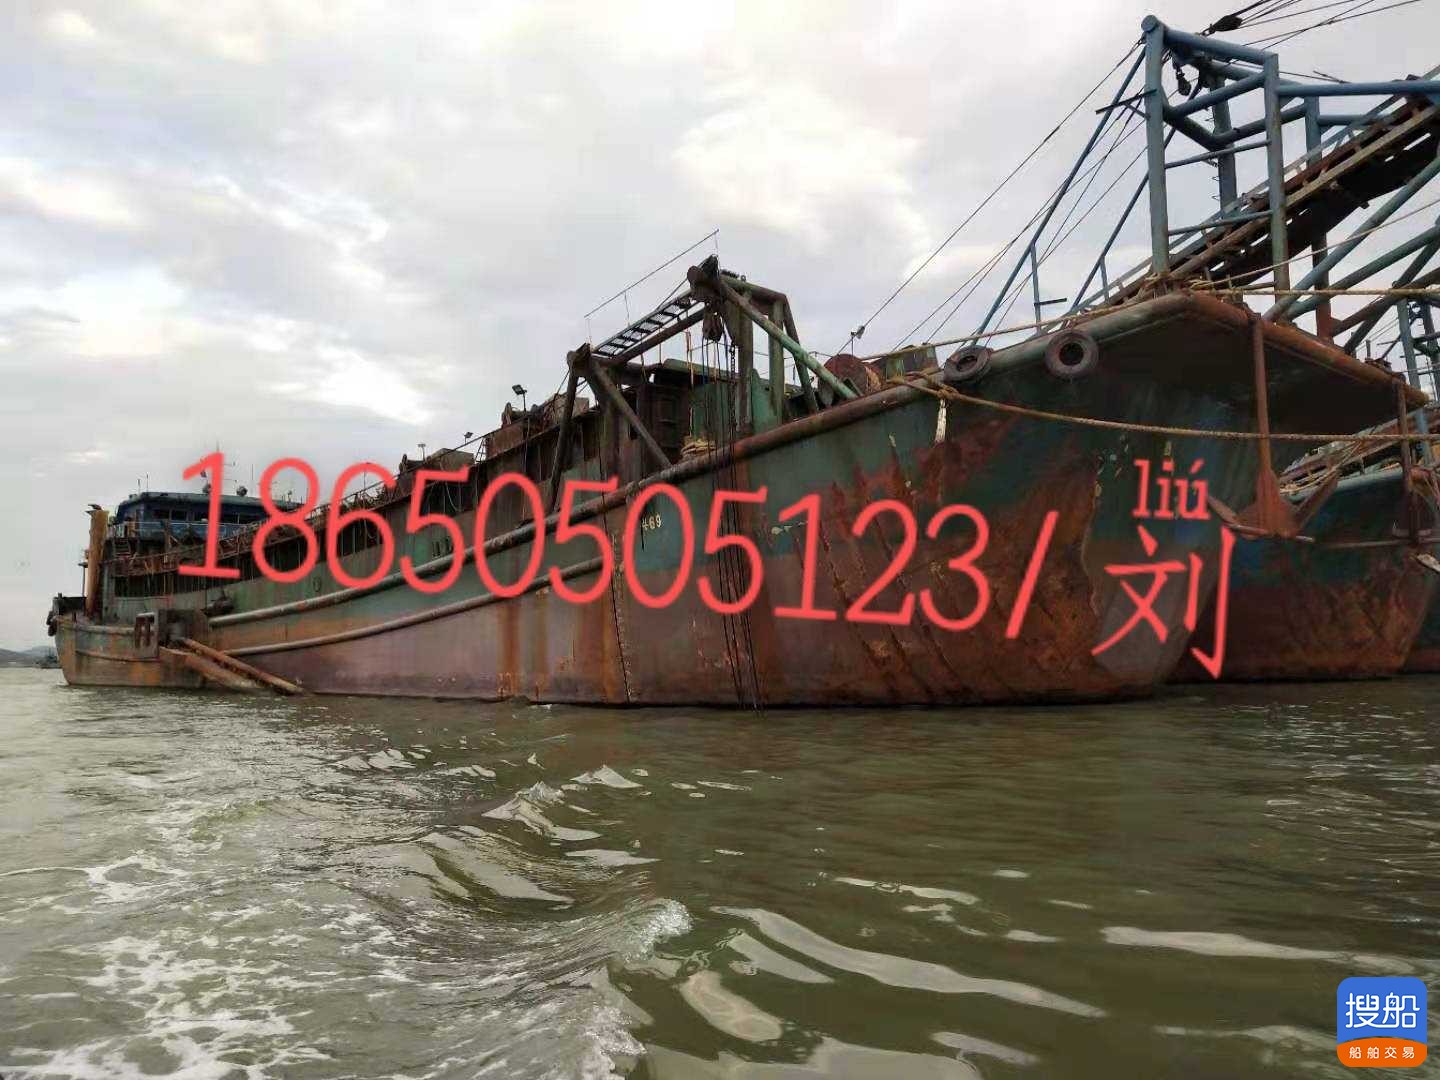 出卖A级内乱河自吸自卸沙船-3700吨 祸建 宁德市-2.jpg